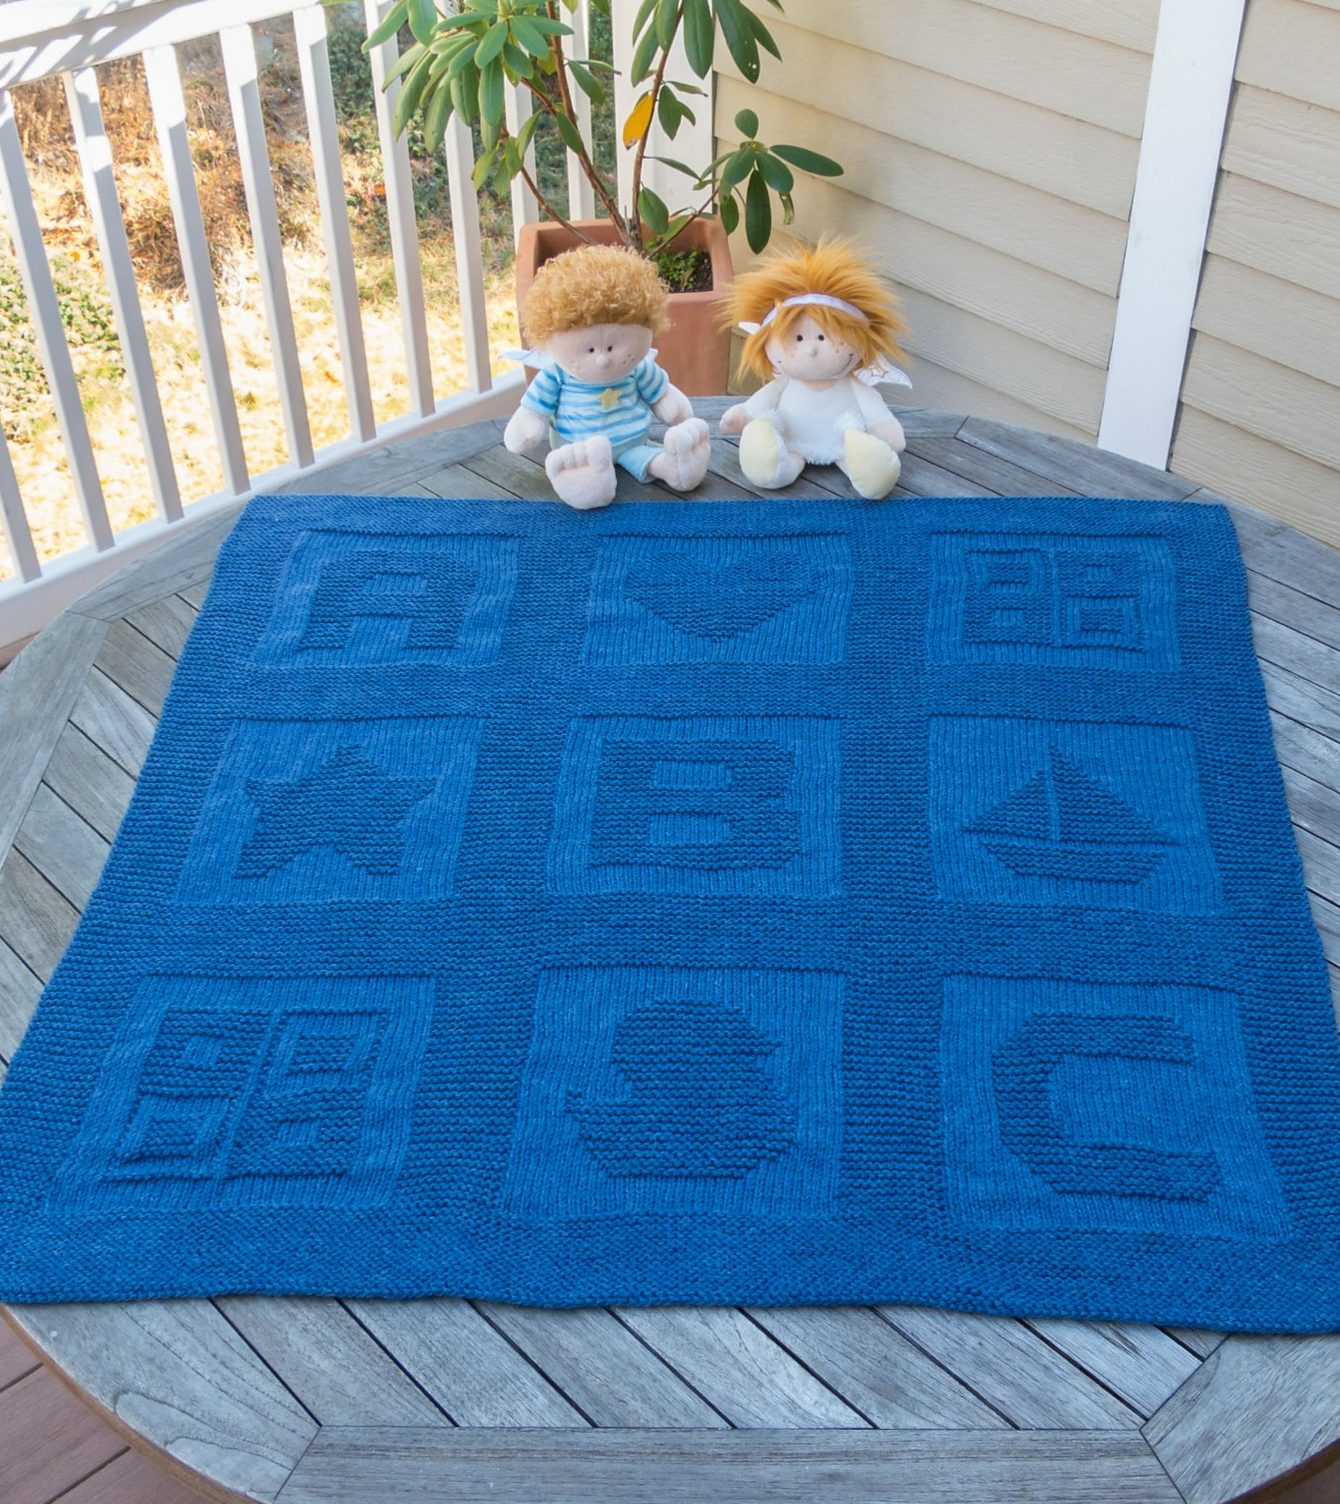 free baby blanket knitting patterns free knitting pattern for abc baby blanket mmzjkrc